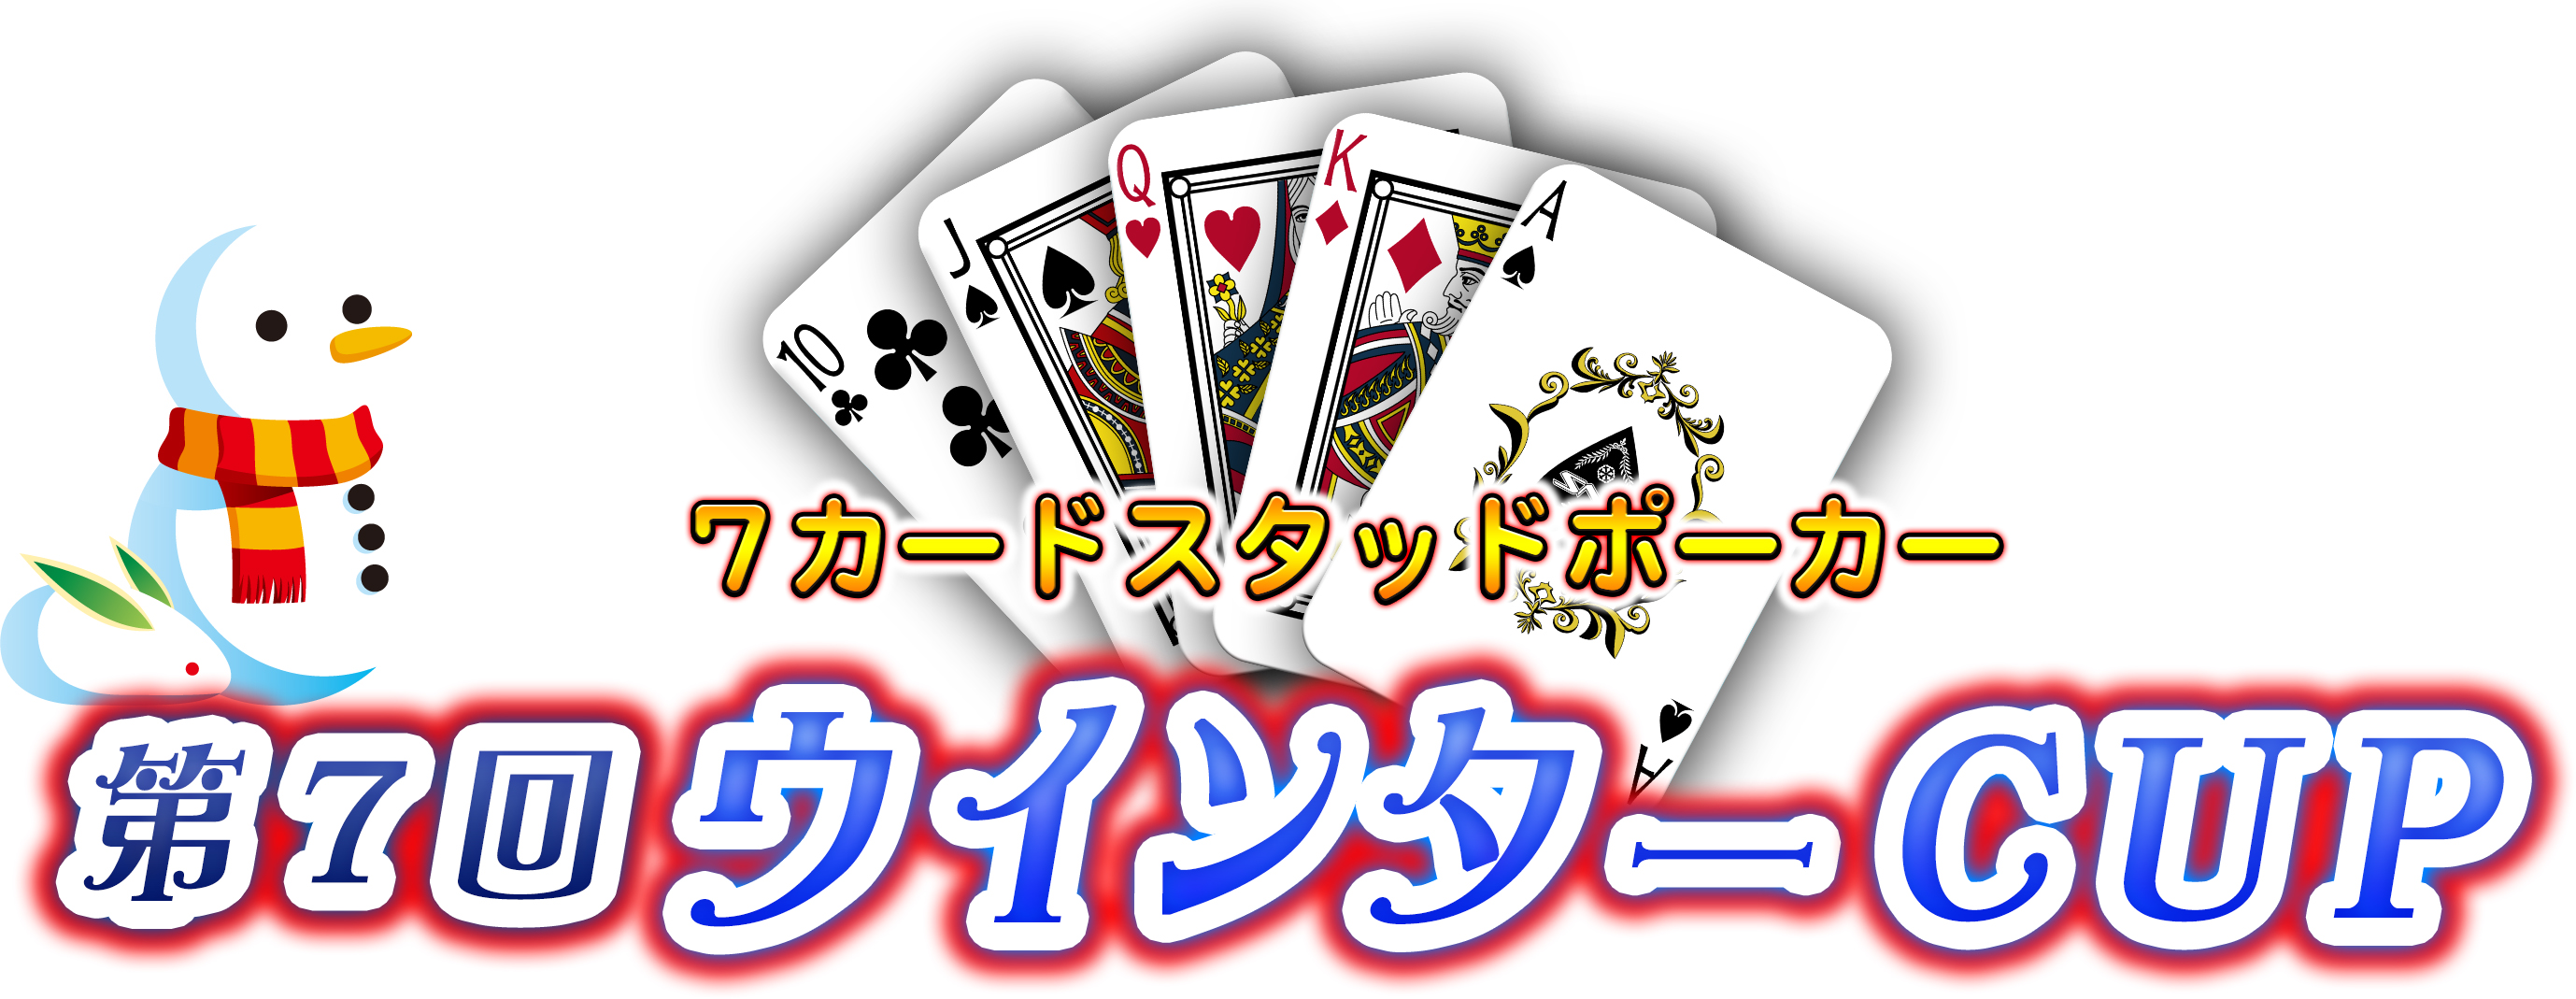 77card Stud PokerEC^[CUP